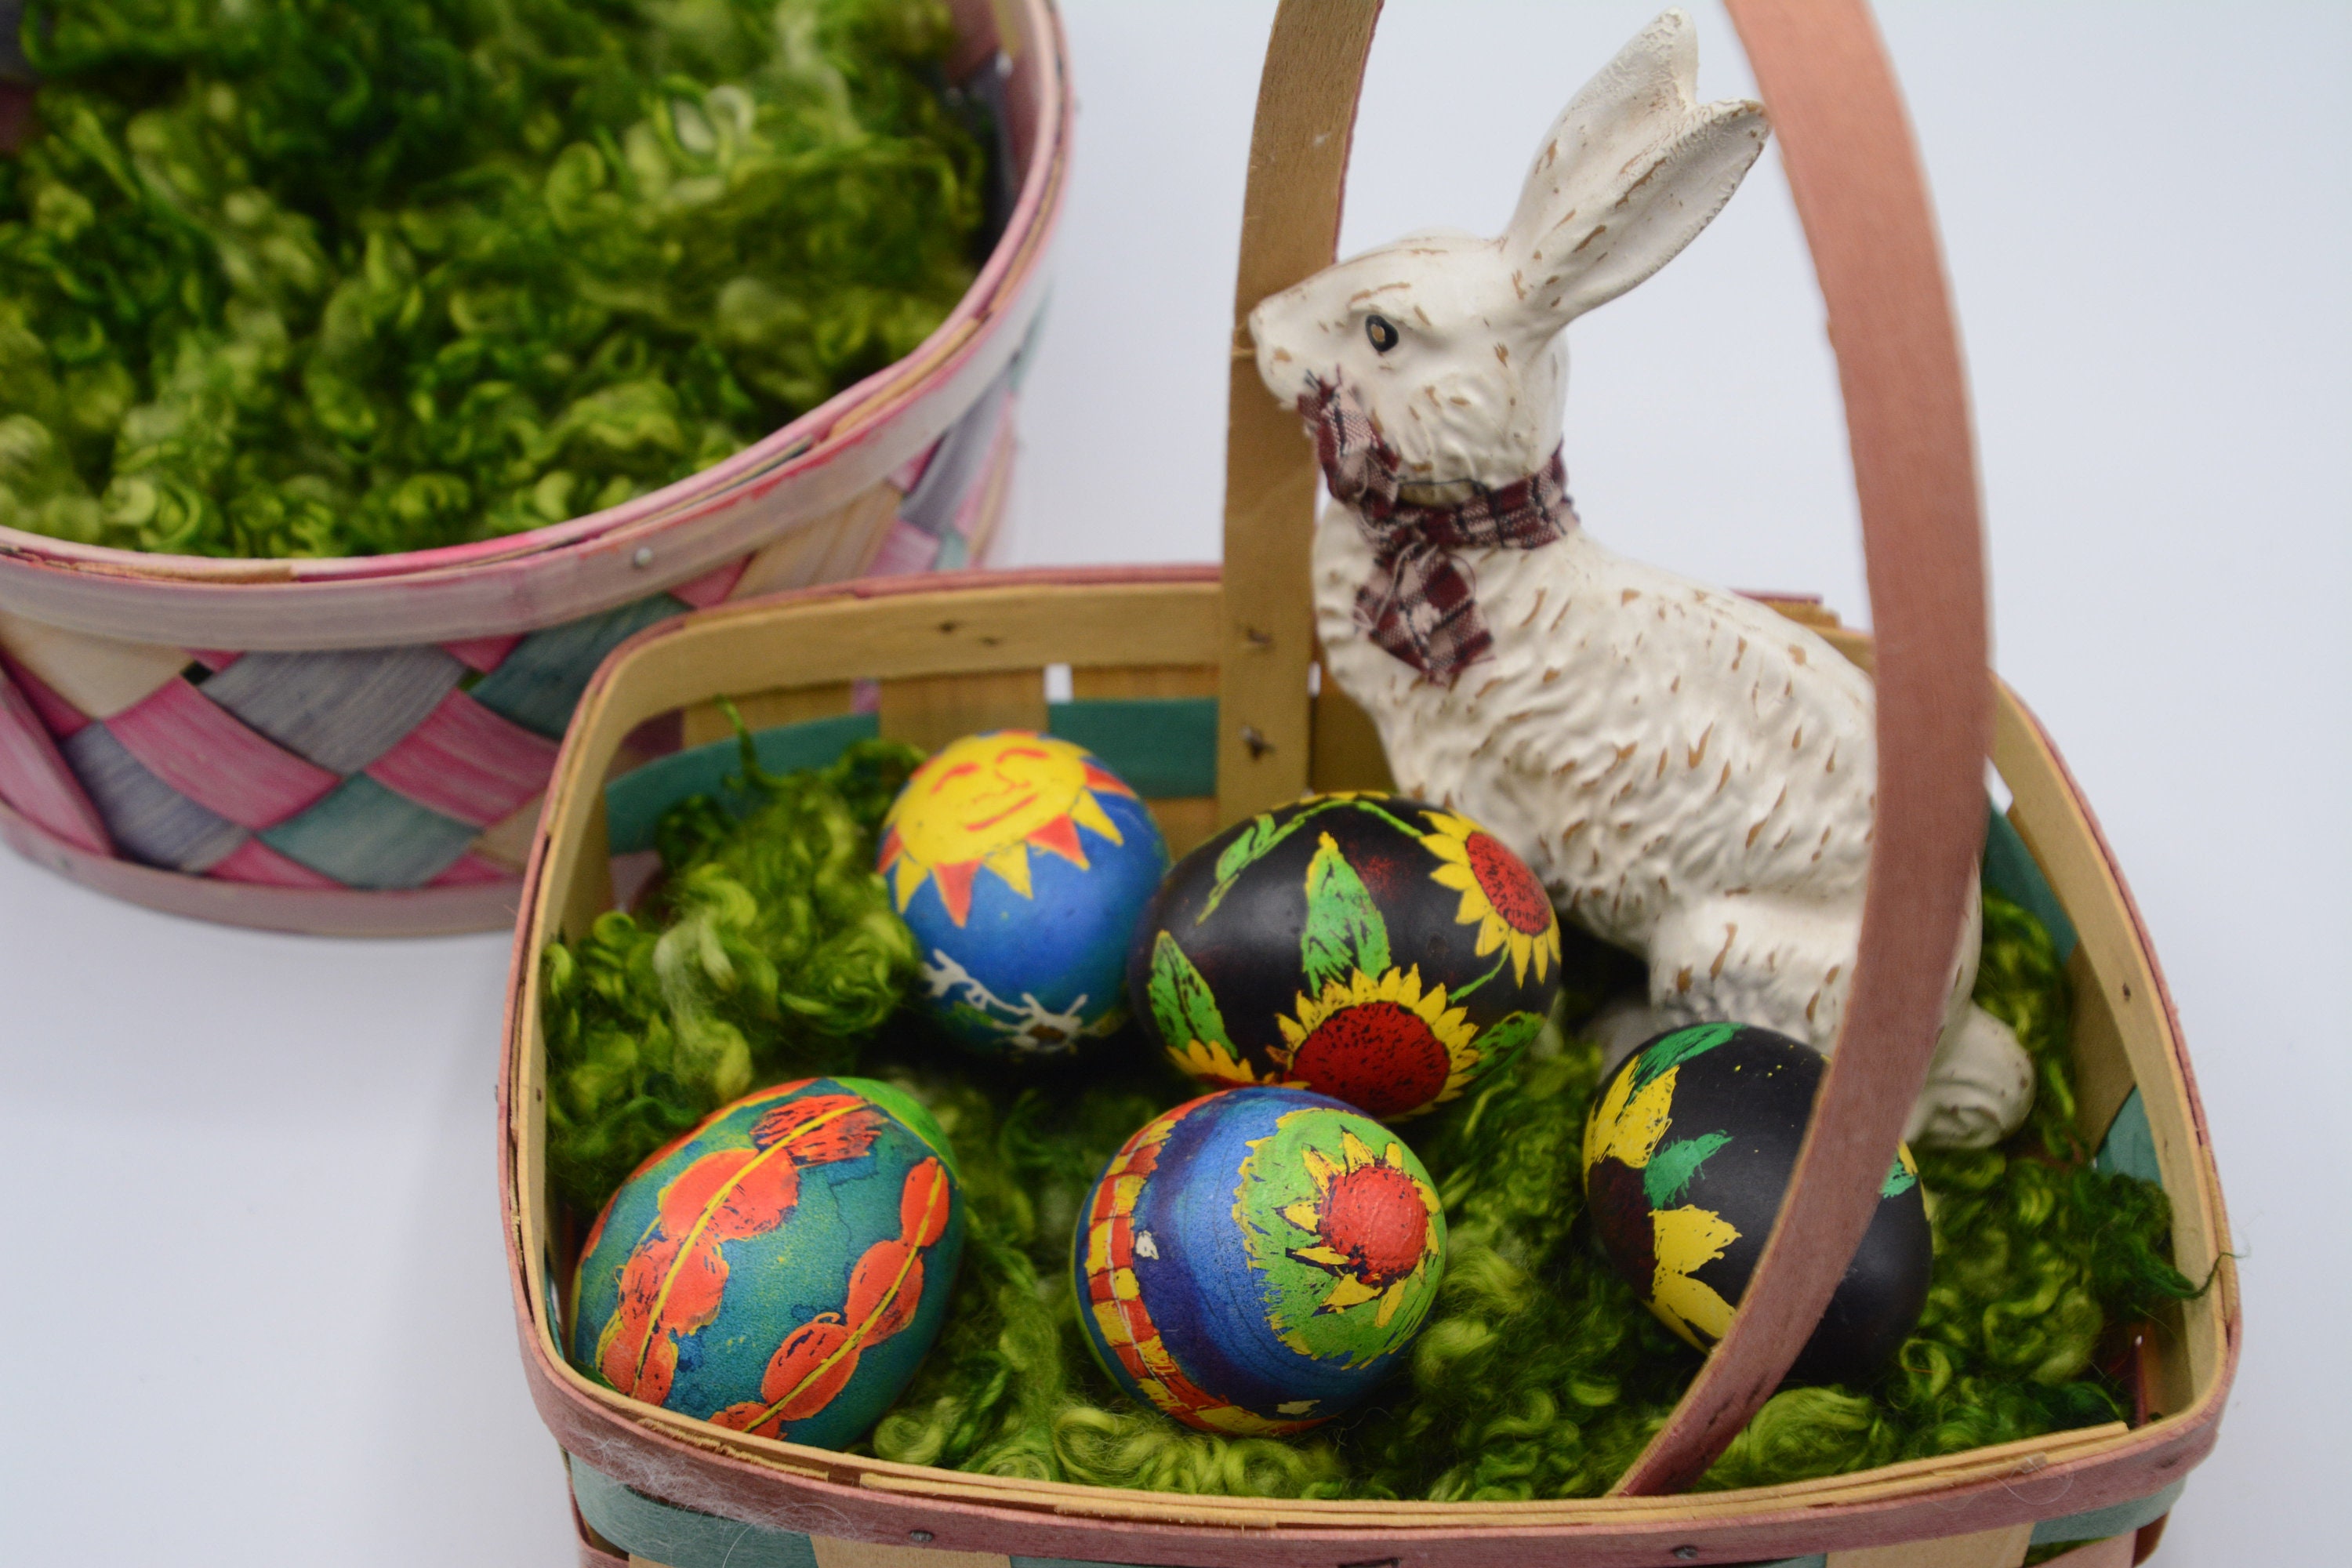 Green Raffia Grass Bundle for Easter Arts and Crafts Easter Eggs Basket  Filler 1/2 lb. Premium Bulk Easter Decorations